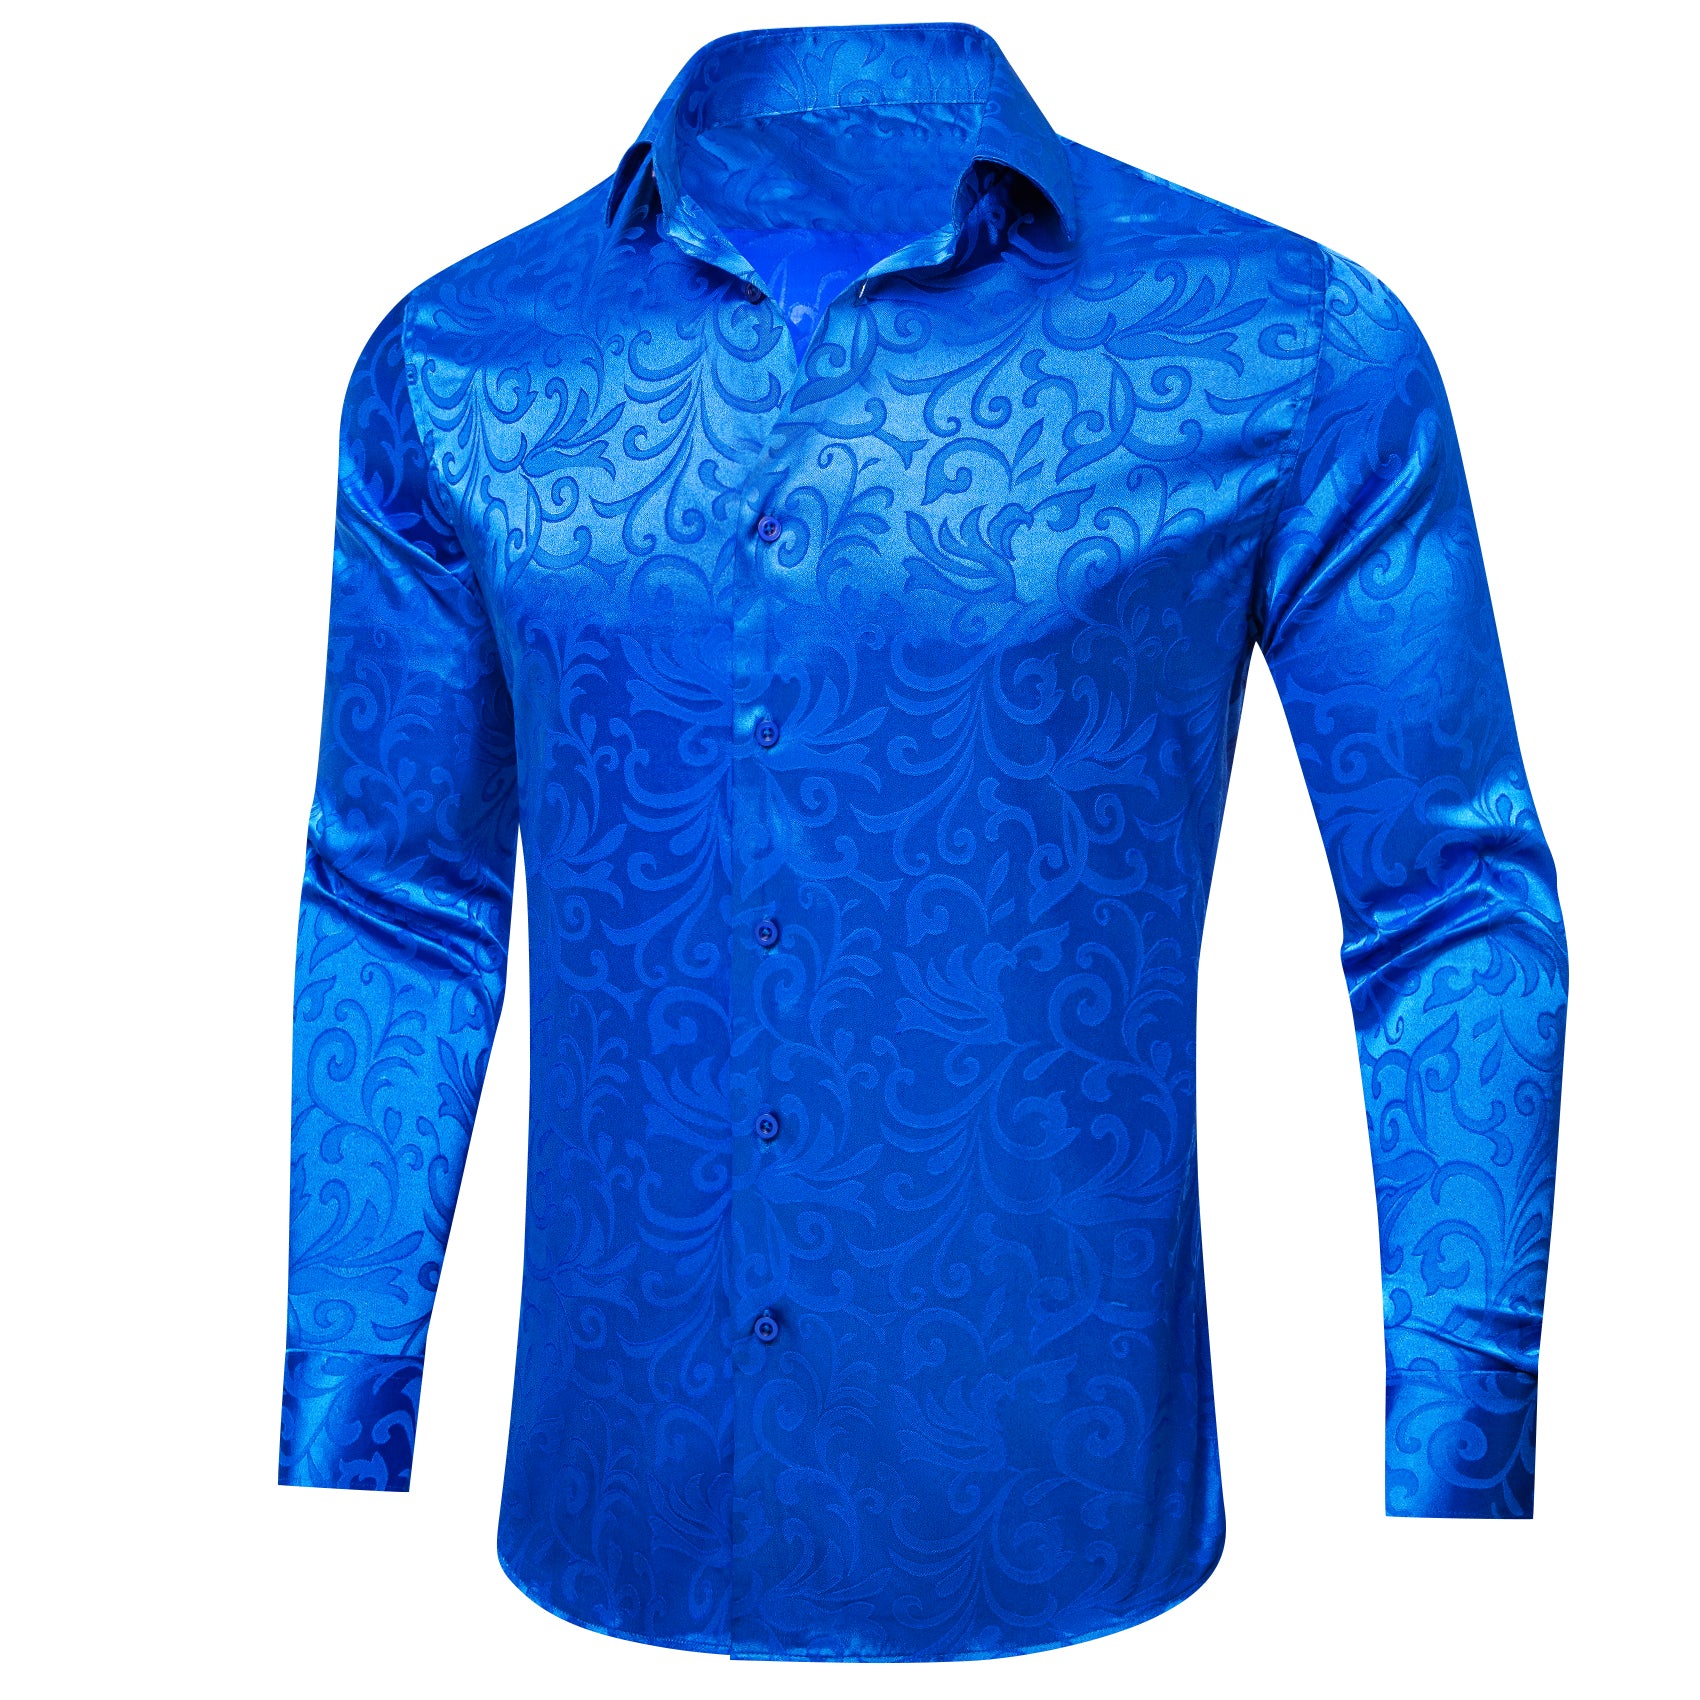 Barry.wang Button Down Shirt Cerulean Blue Floral Silk Men's Shirt